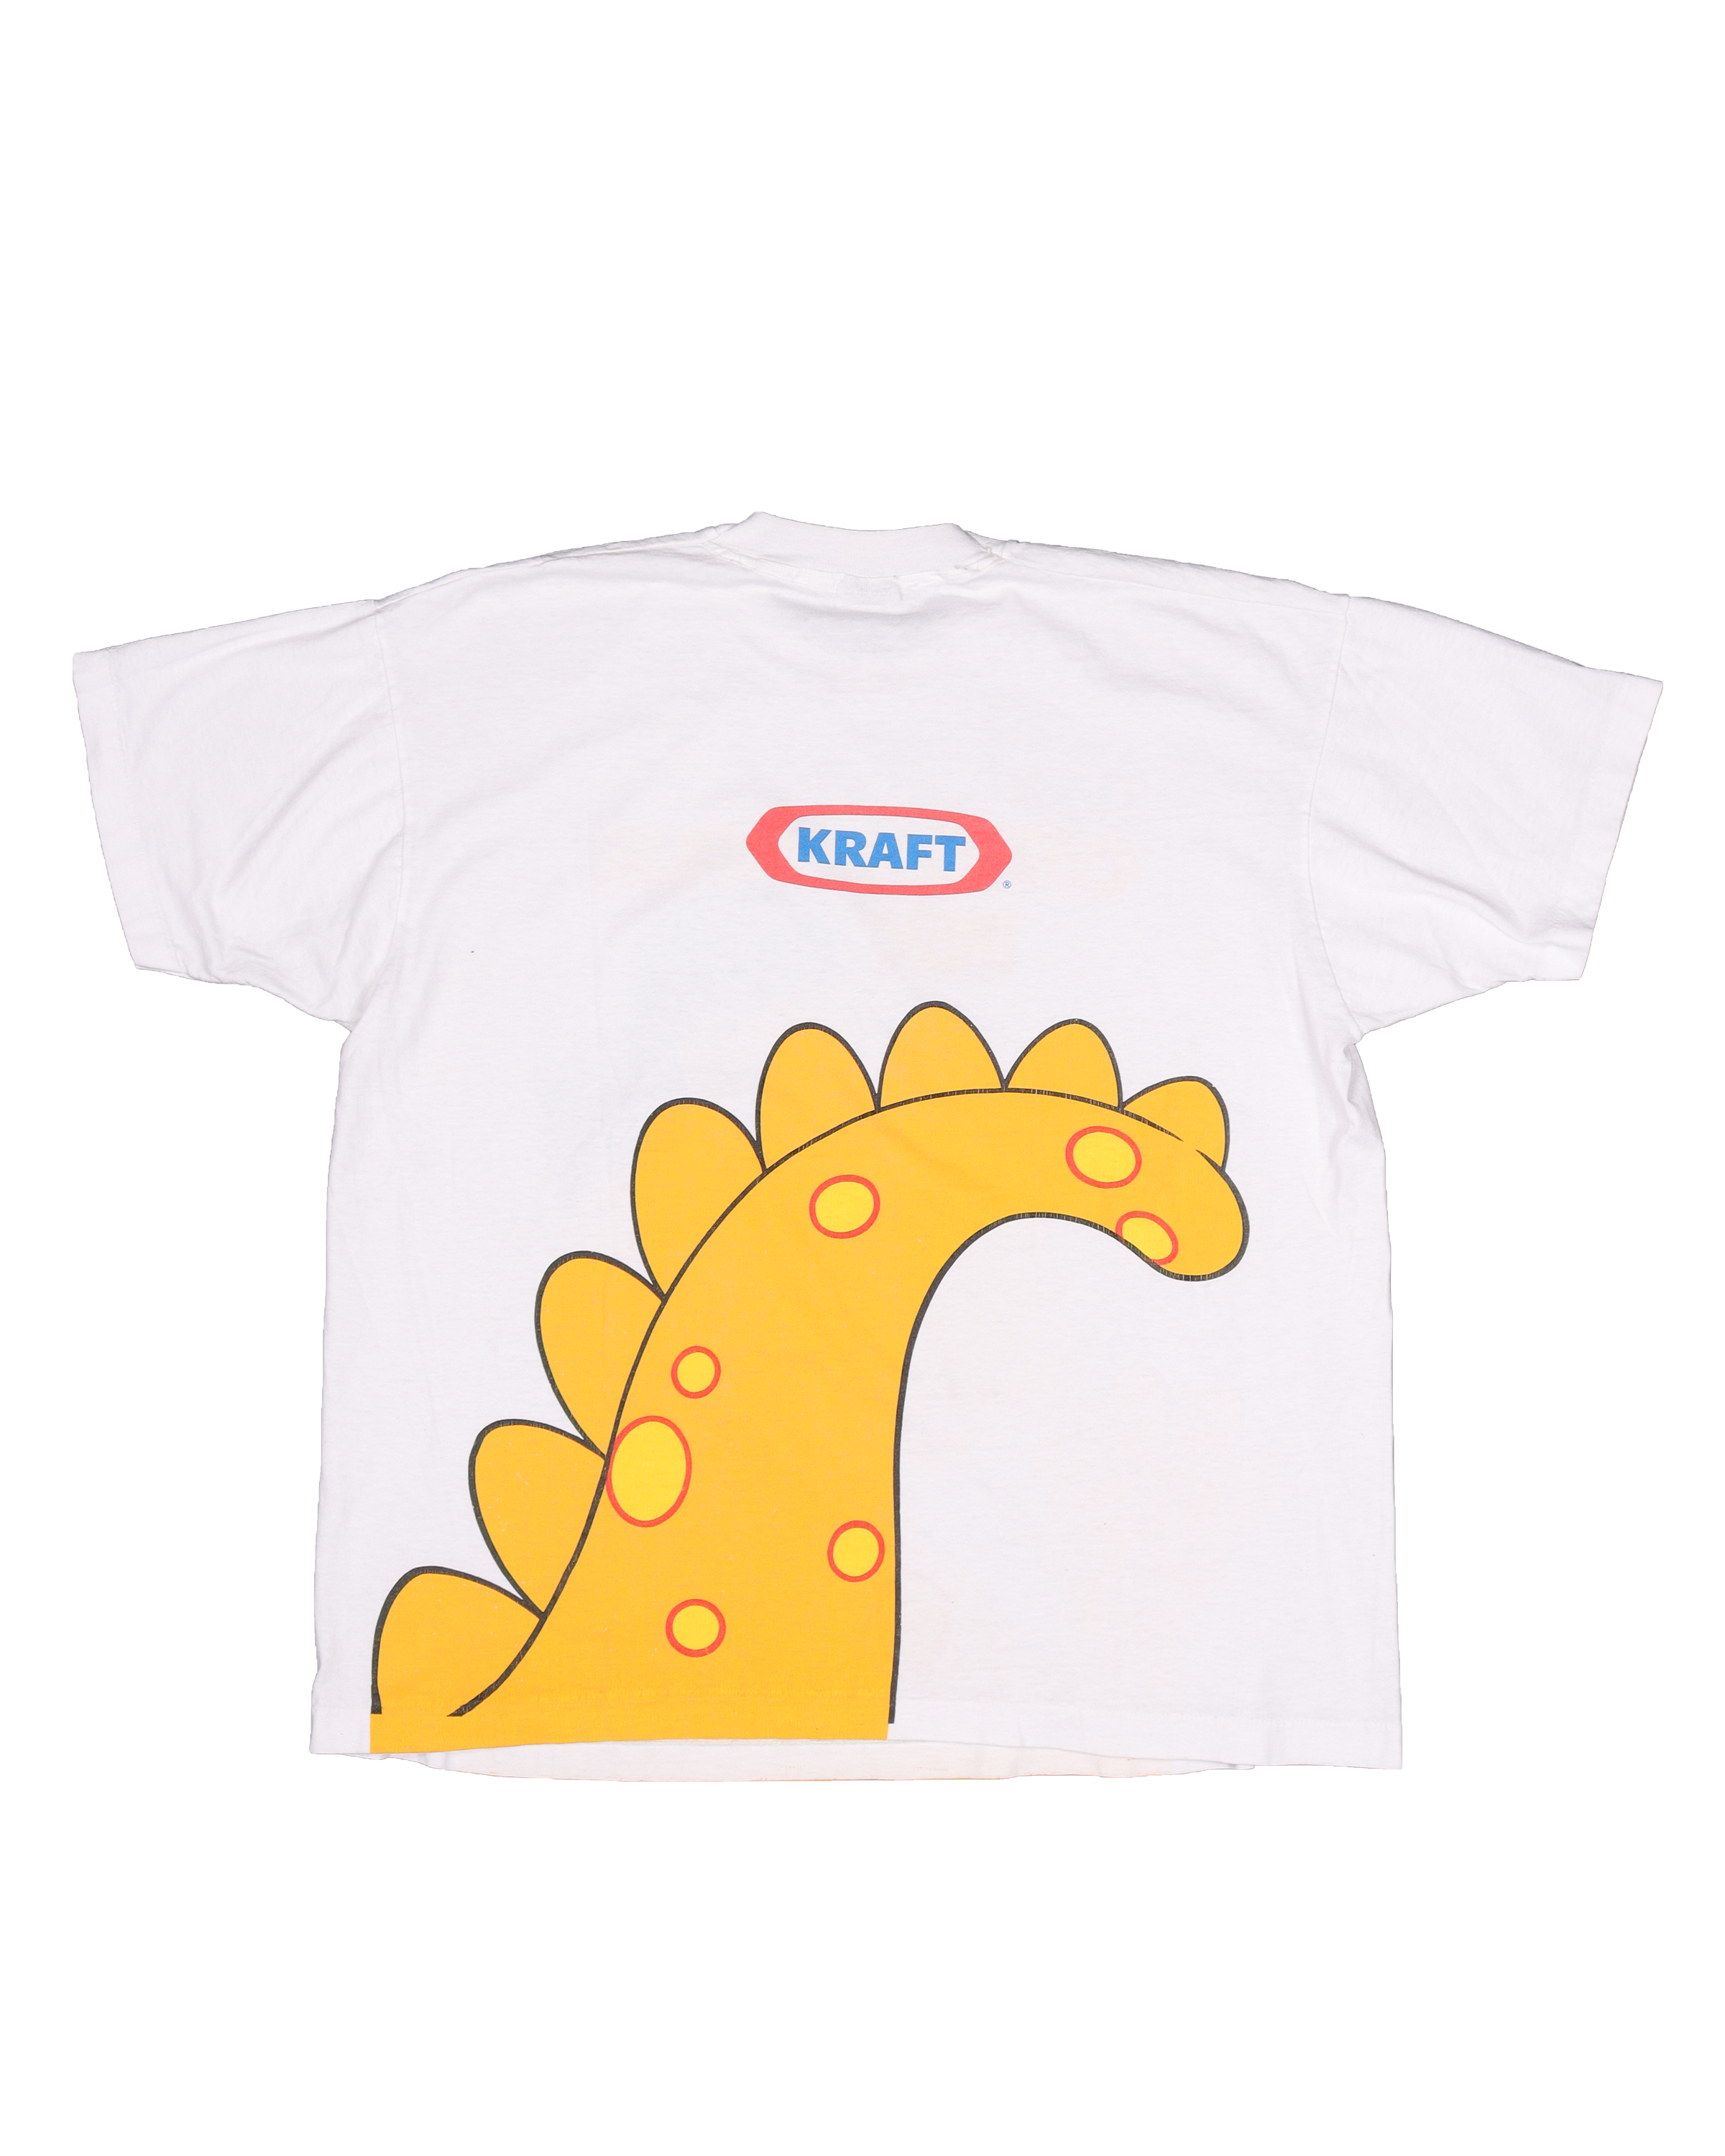 Kraft "Cheesasaurus Rex" T-Shirt